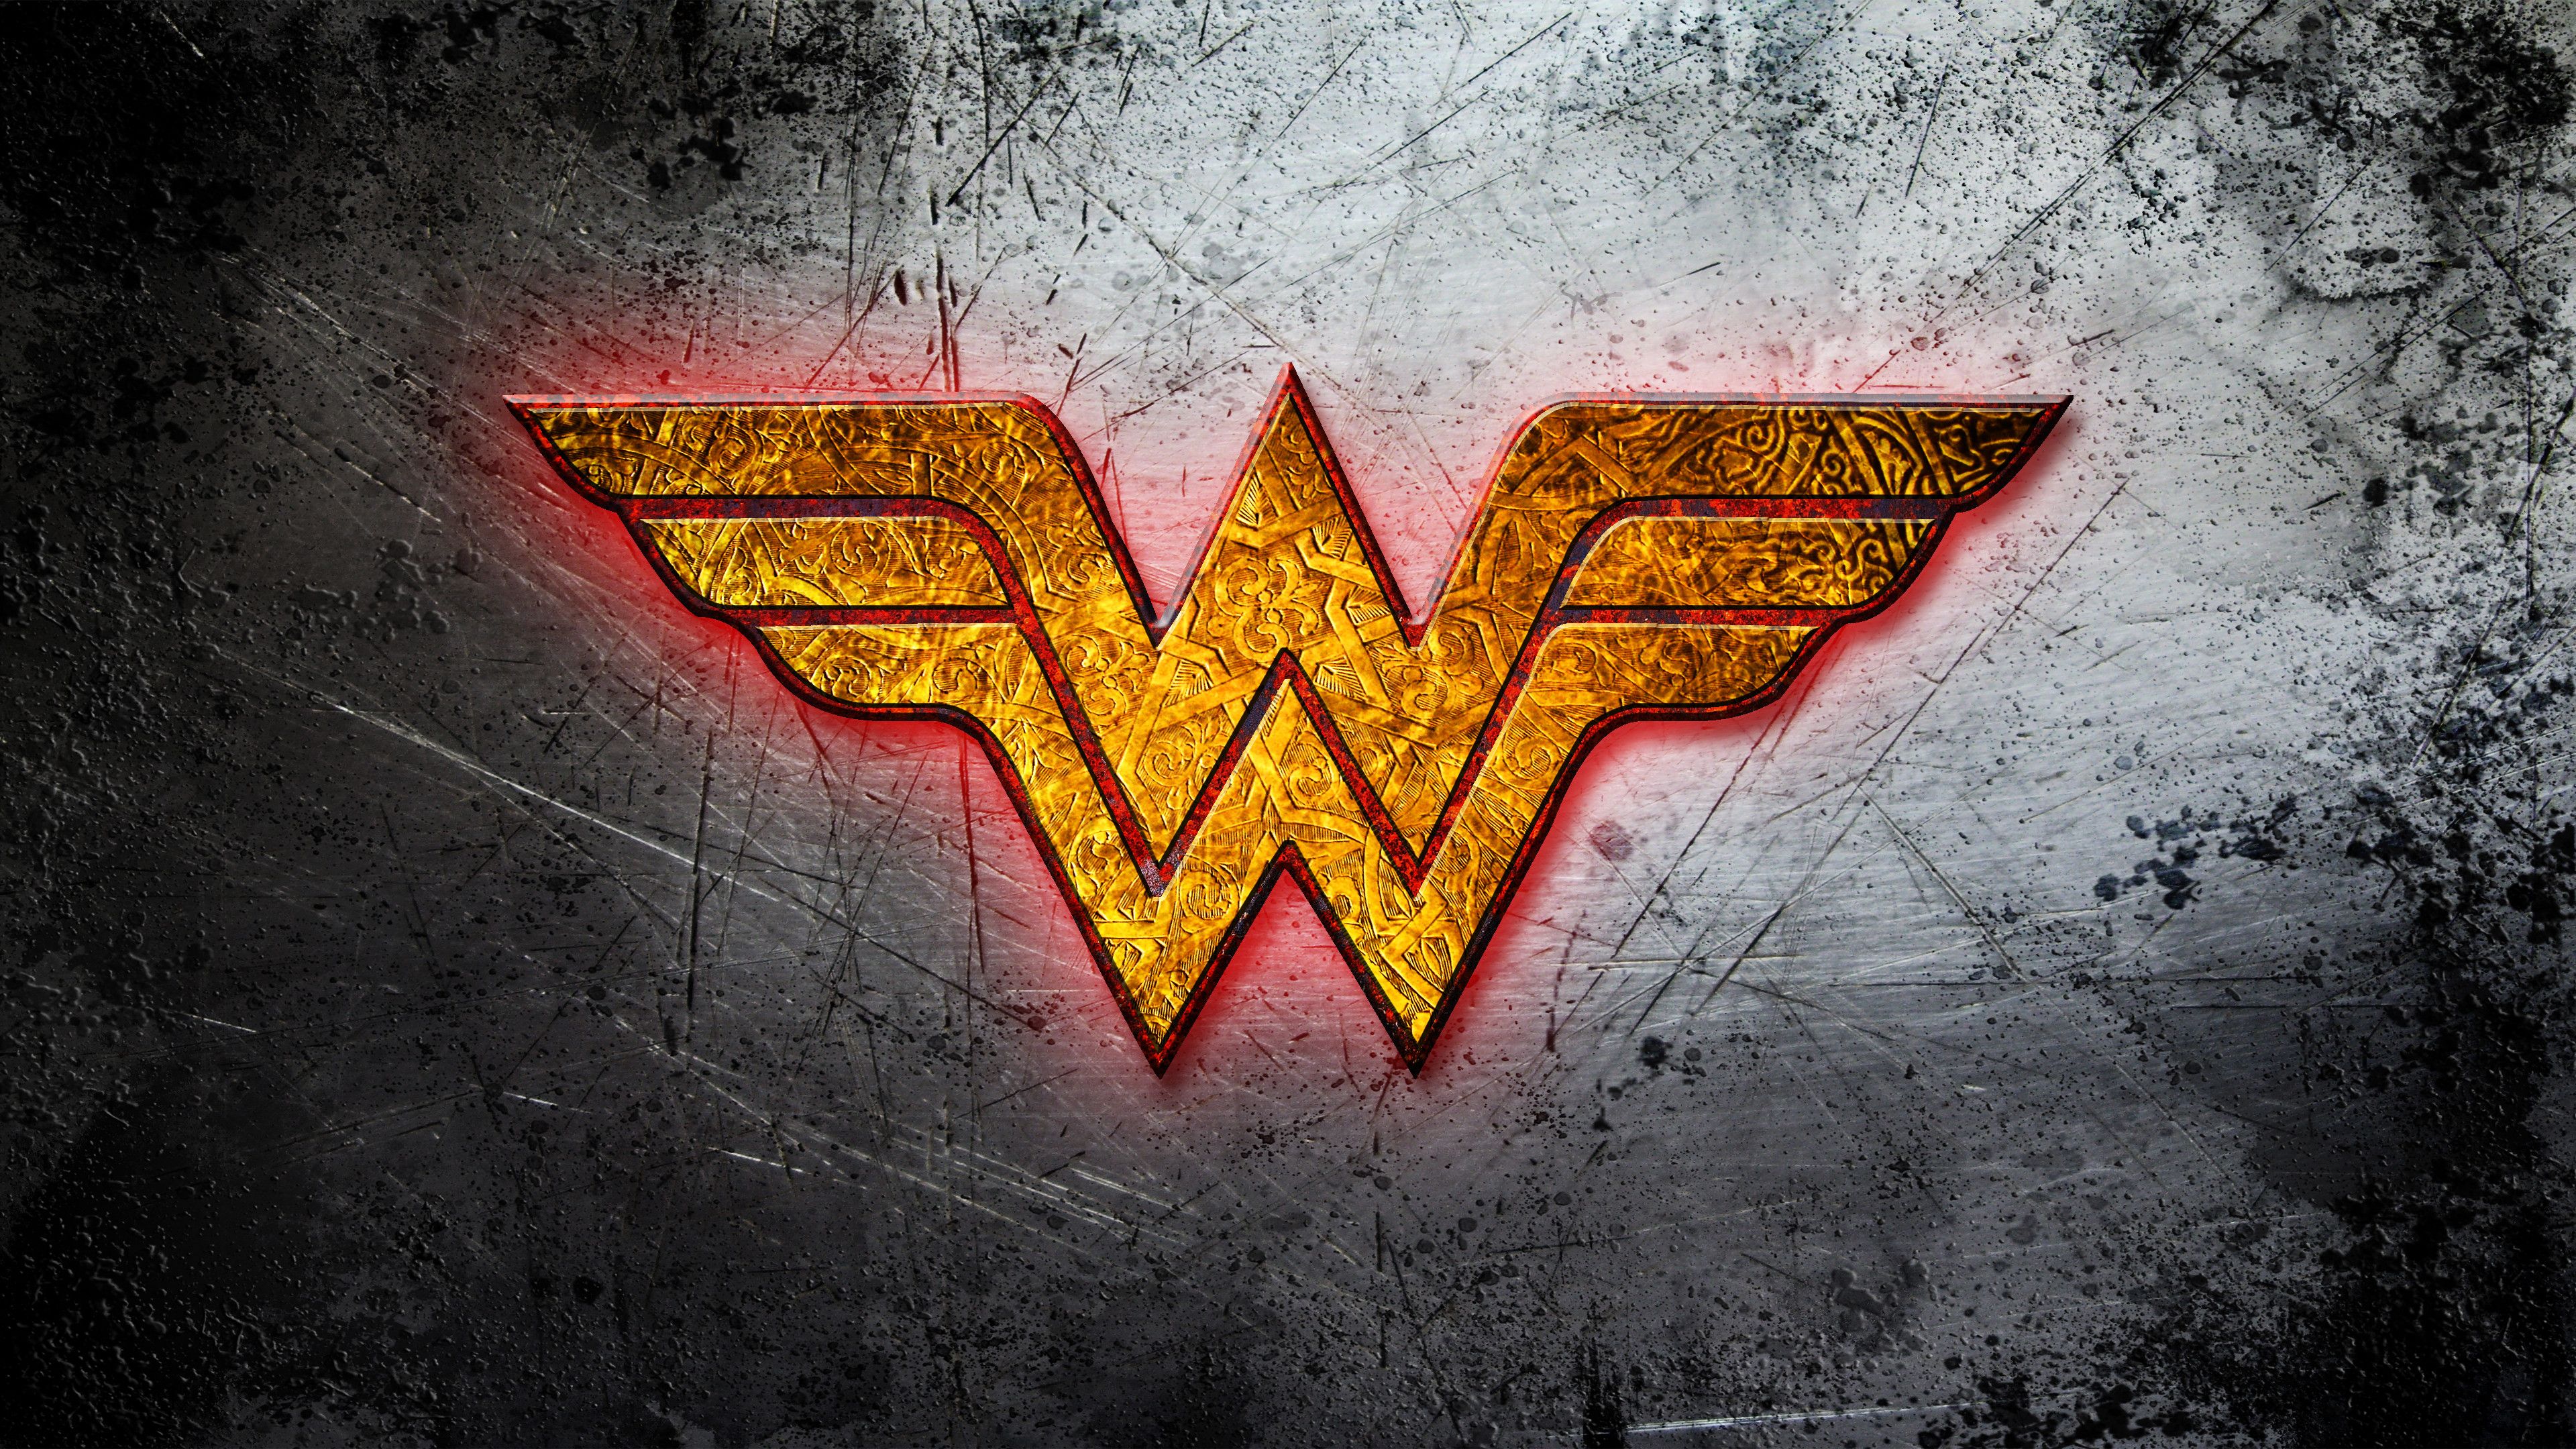 Wonder Woman Wallpaper. Superman Wonder Woman Wallpaper, Wonder Woman Wallpaper and Stevie Wonder Wallpaper